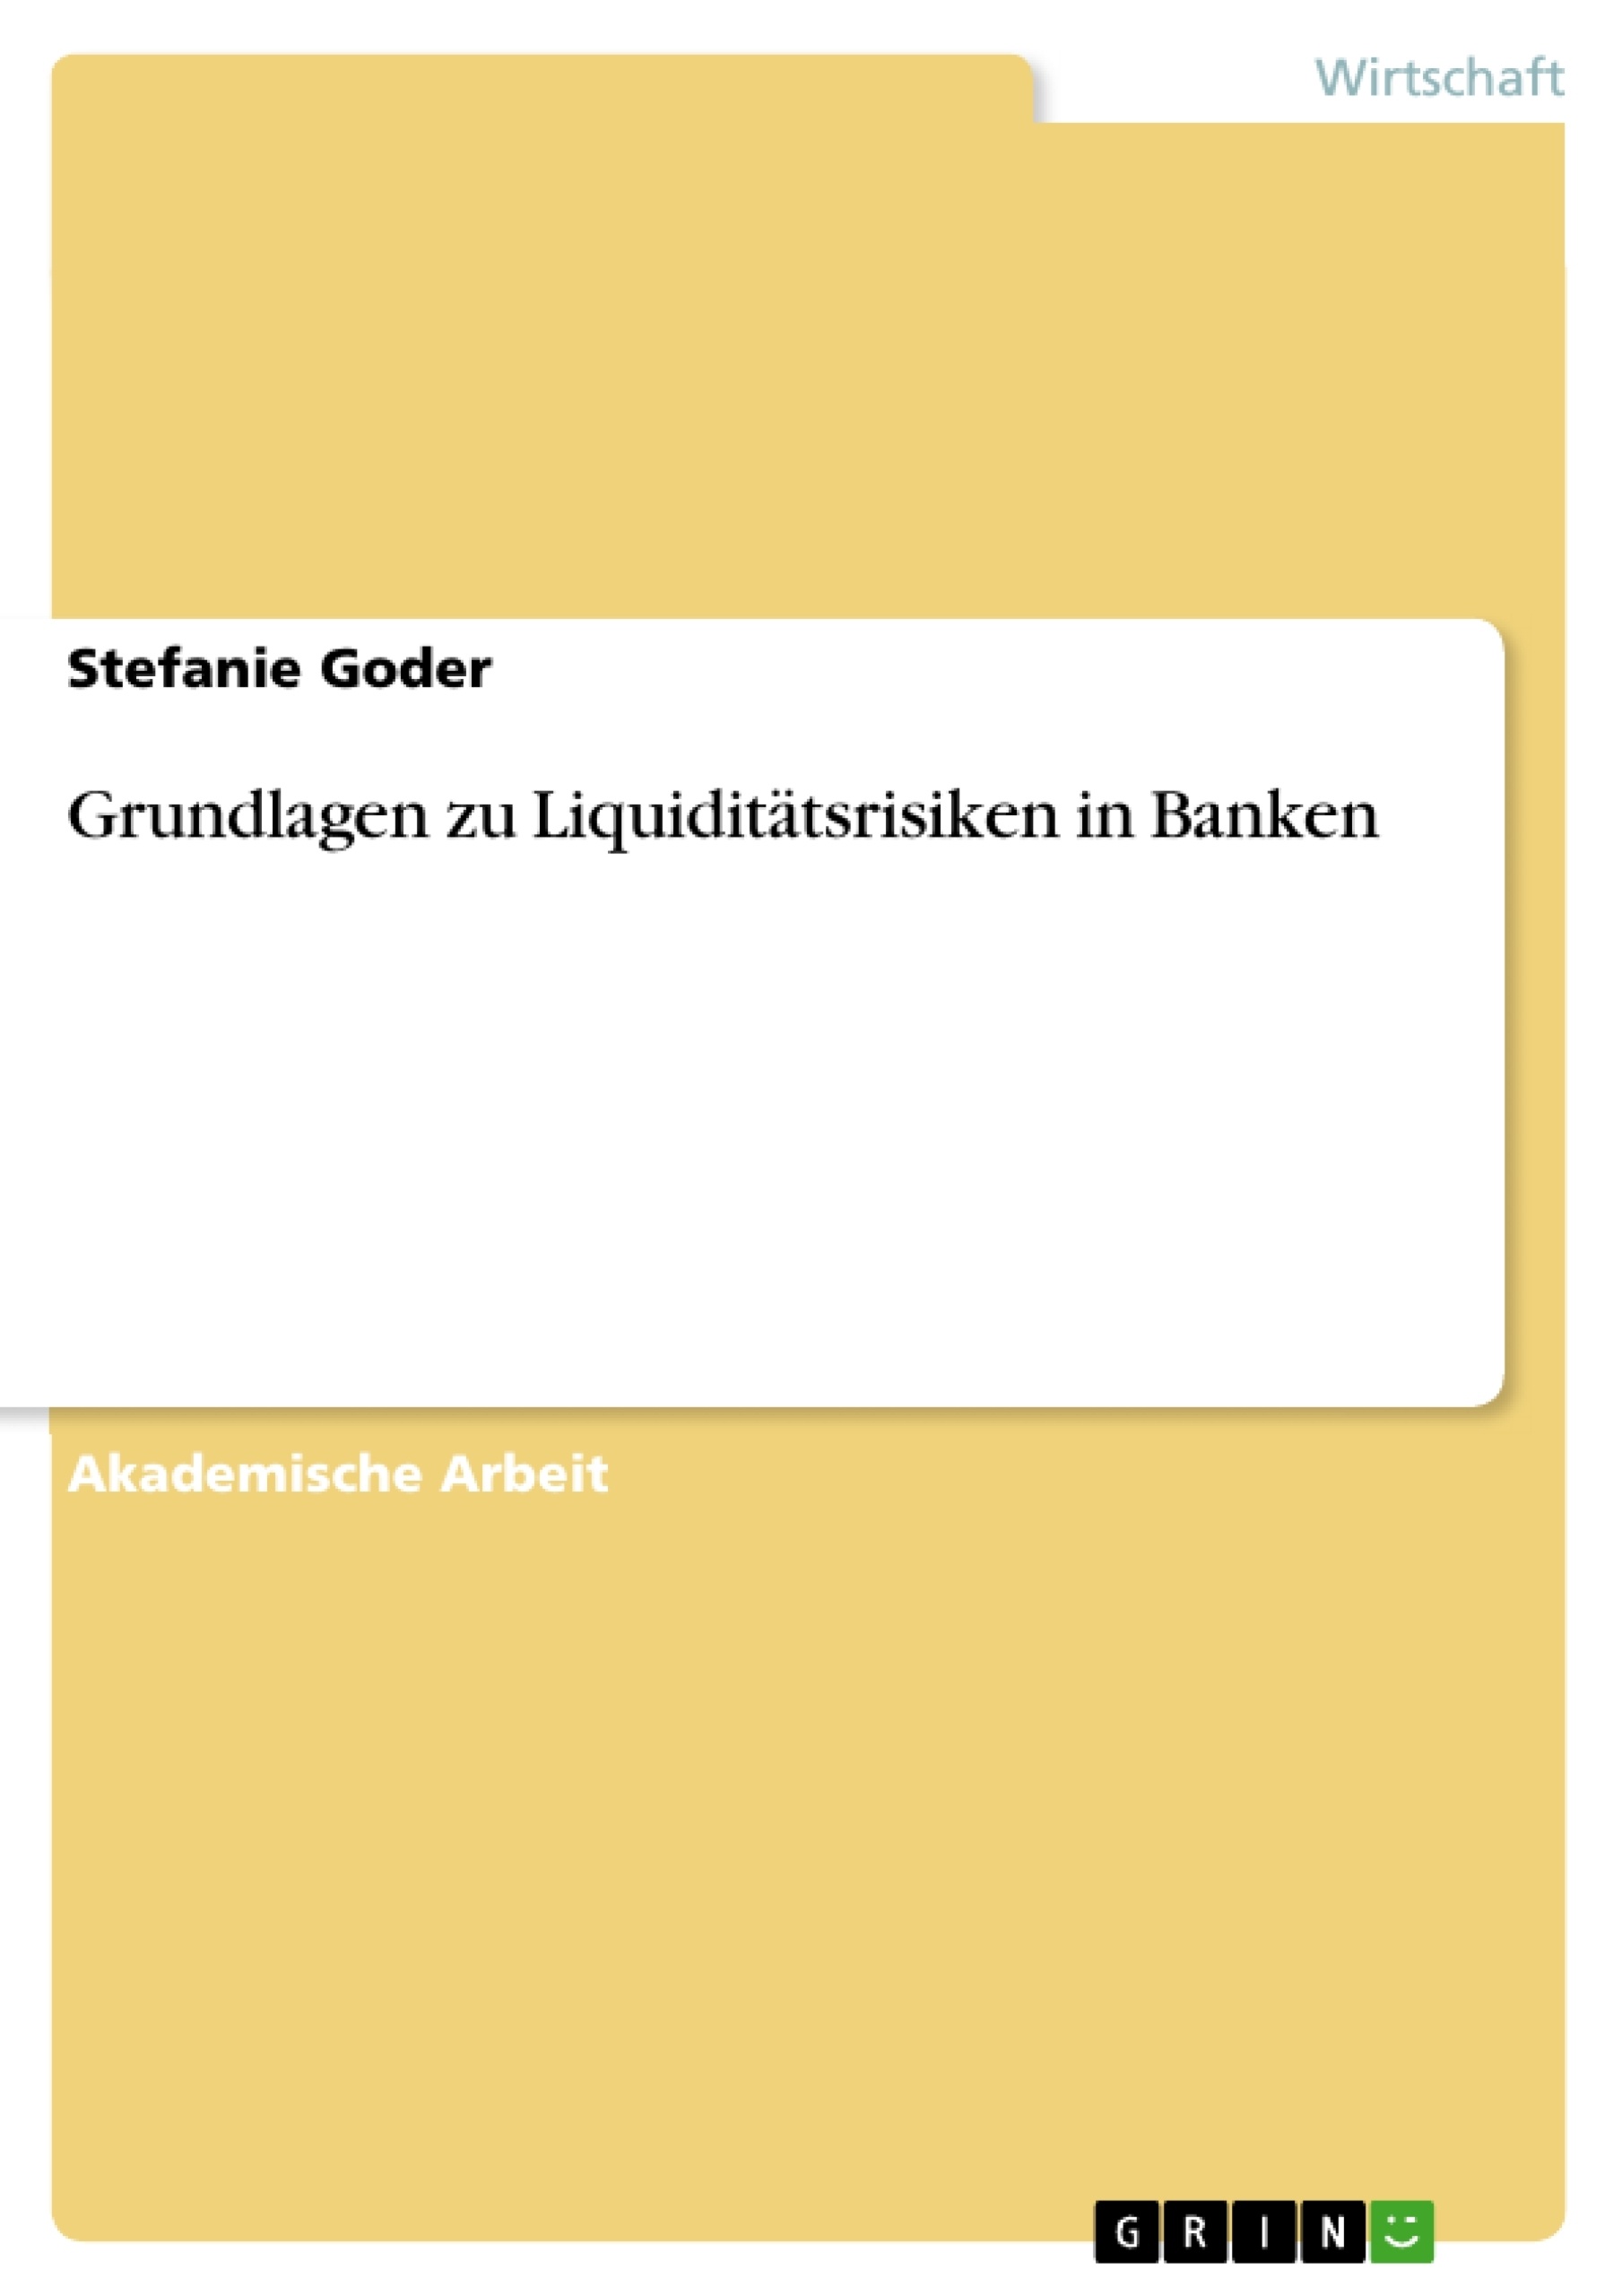 Titre: Grundlagen zu Liquiditätsrisiken in Banken